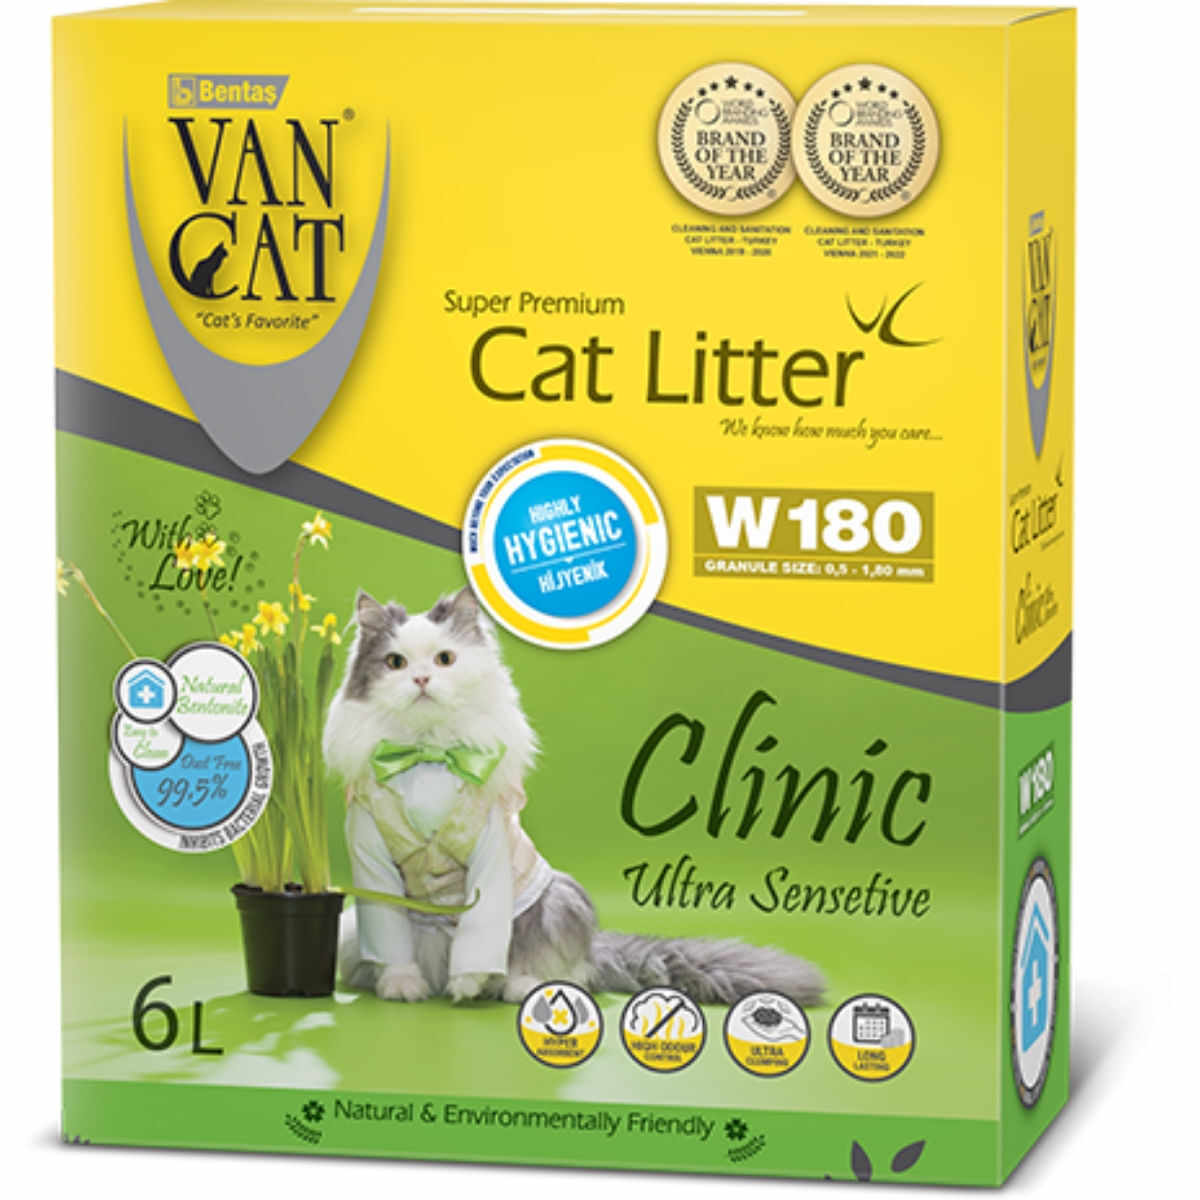 VANCAT Clinic Ultrasensitive, neparfumat, așternut igienic pisici, granule, bentonită, aglomerant, fără praf, 6l